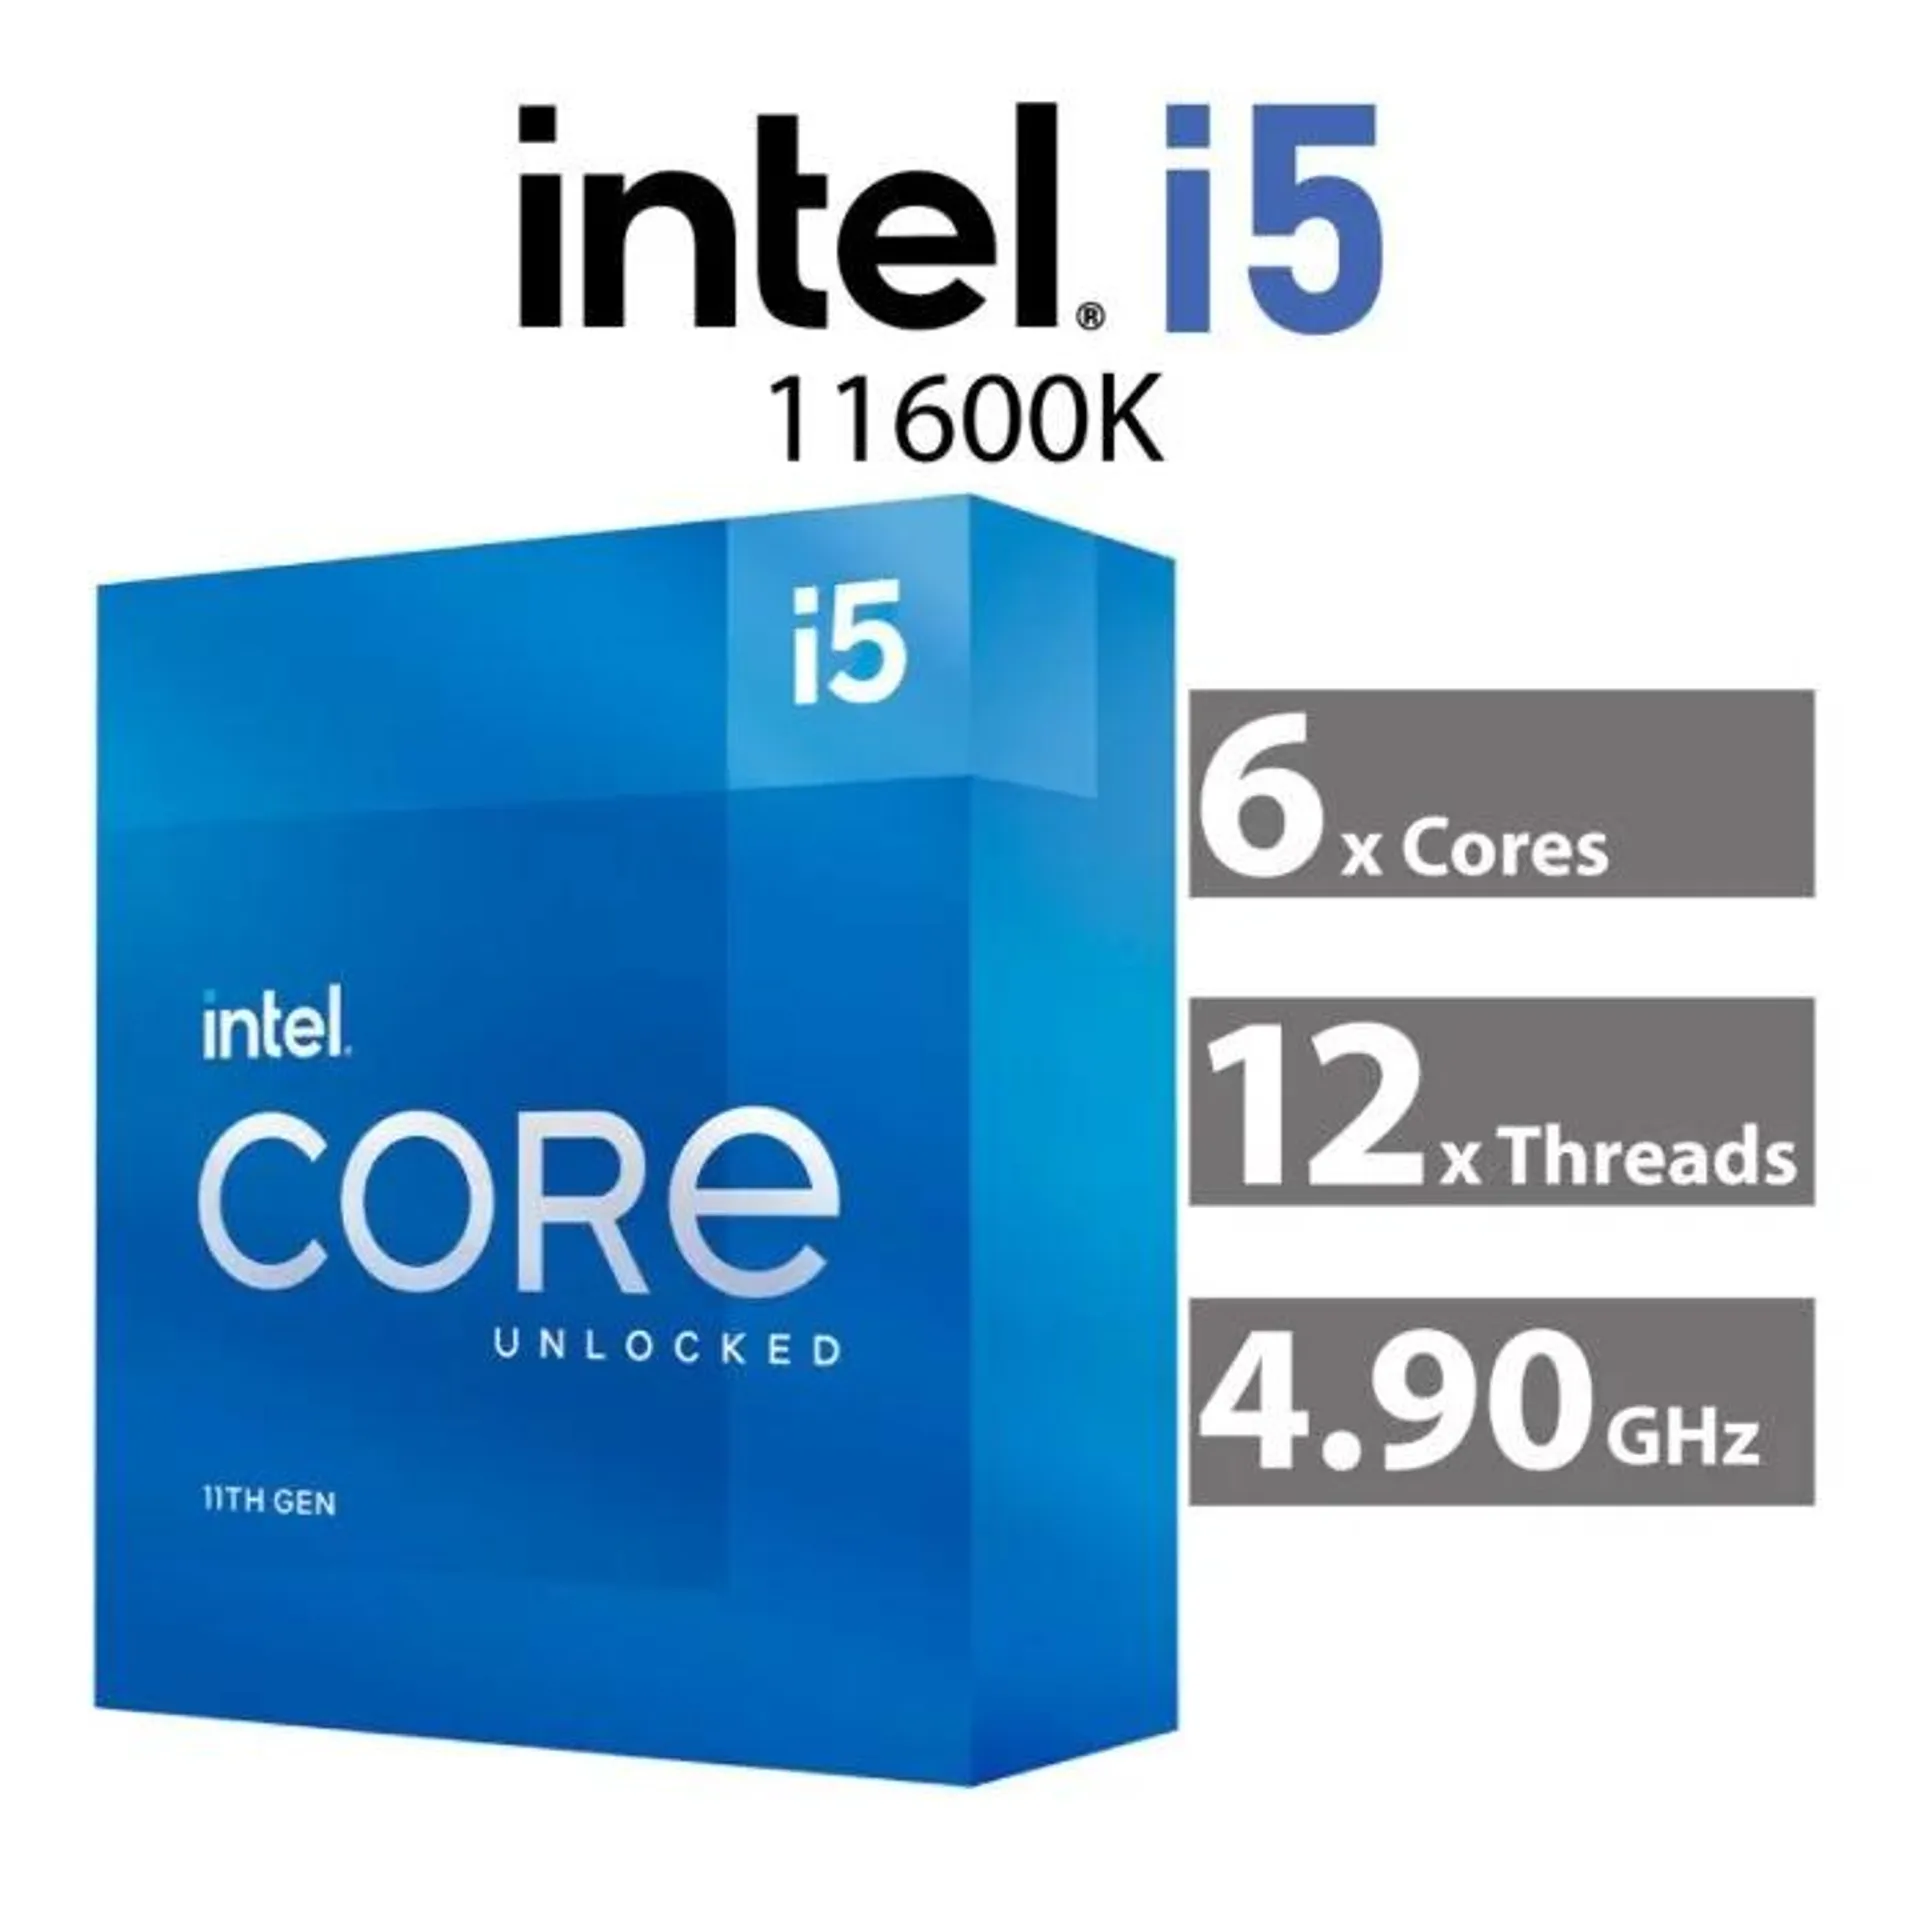 Intel Core i5-11600K Rocket Lake 6-Core 3.90GHz LGA1200 125W BX8070811600K Desktop Processor